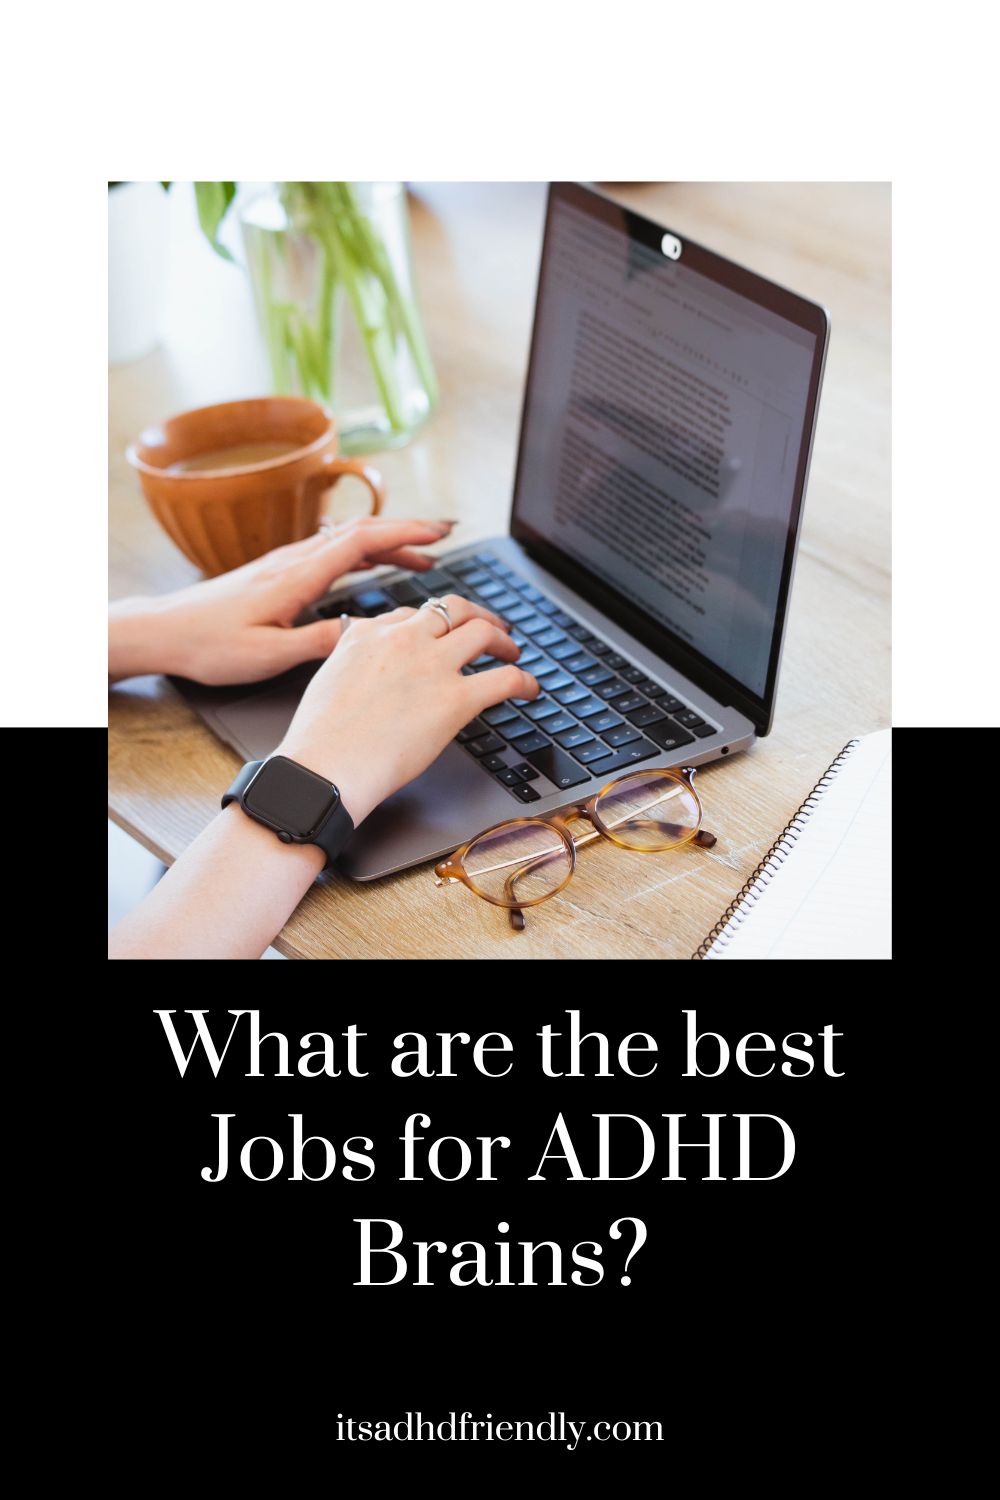 ADHD jobs